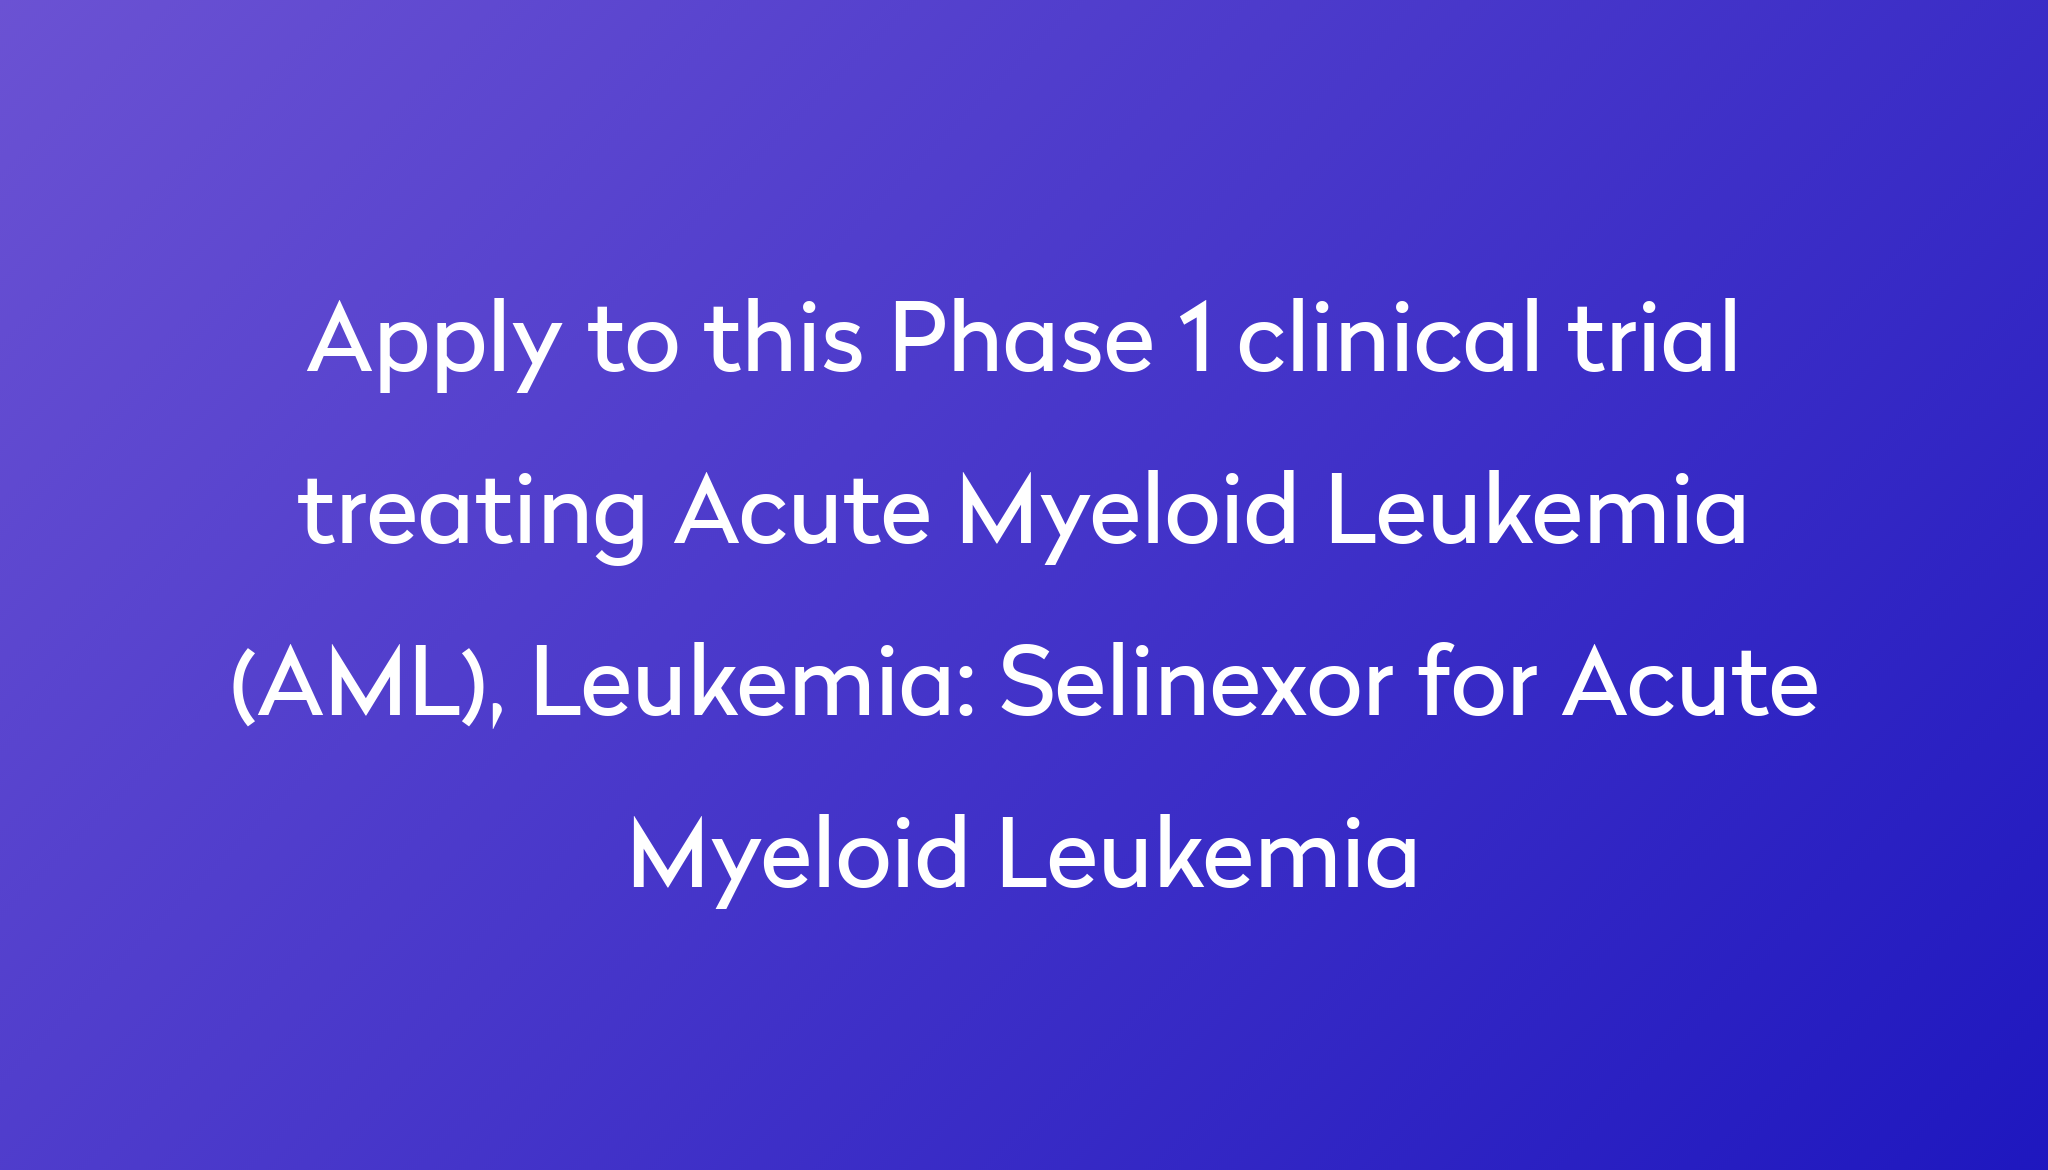 Selinexor for Acute Myeloid Leukemia Clinical Trial 2023 Power